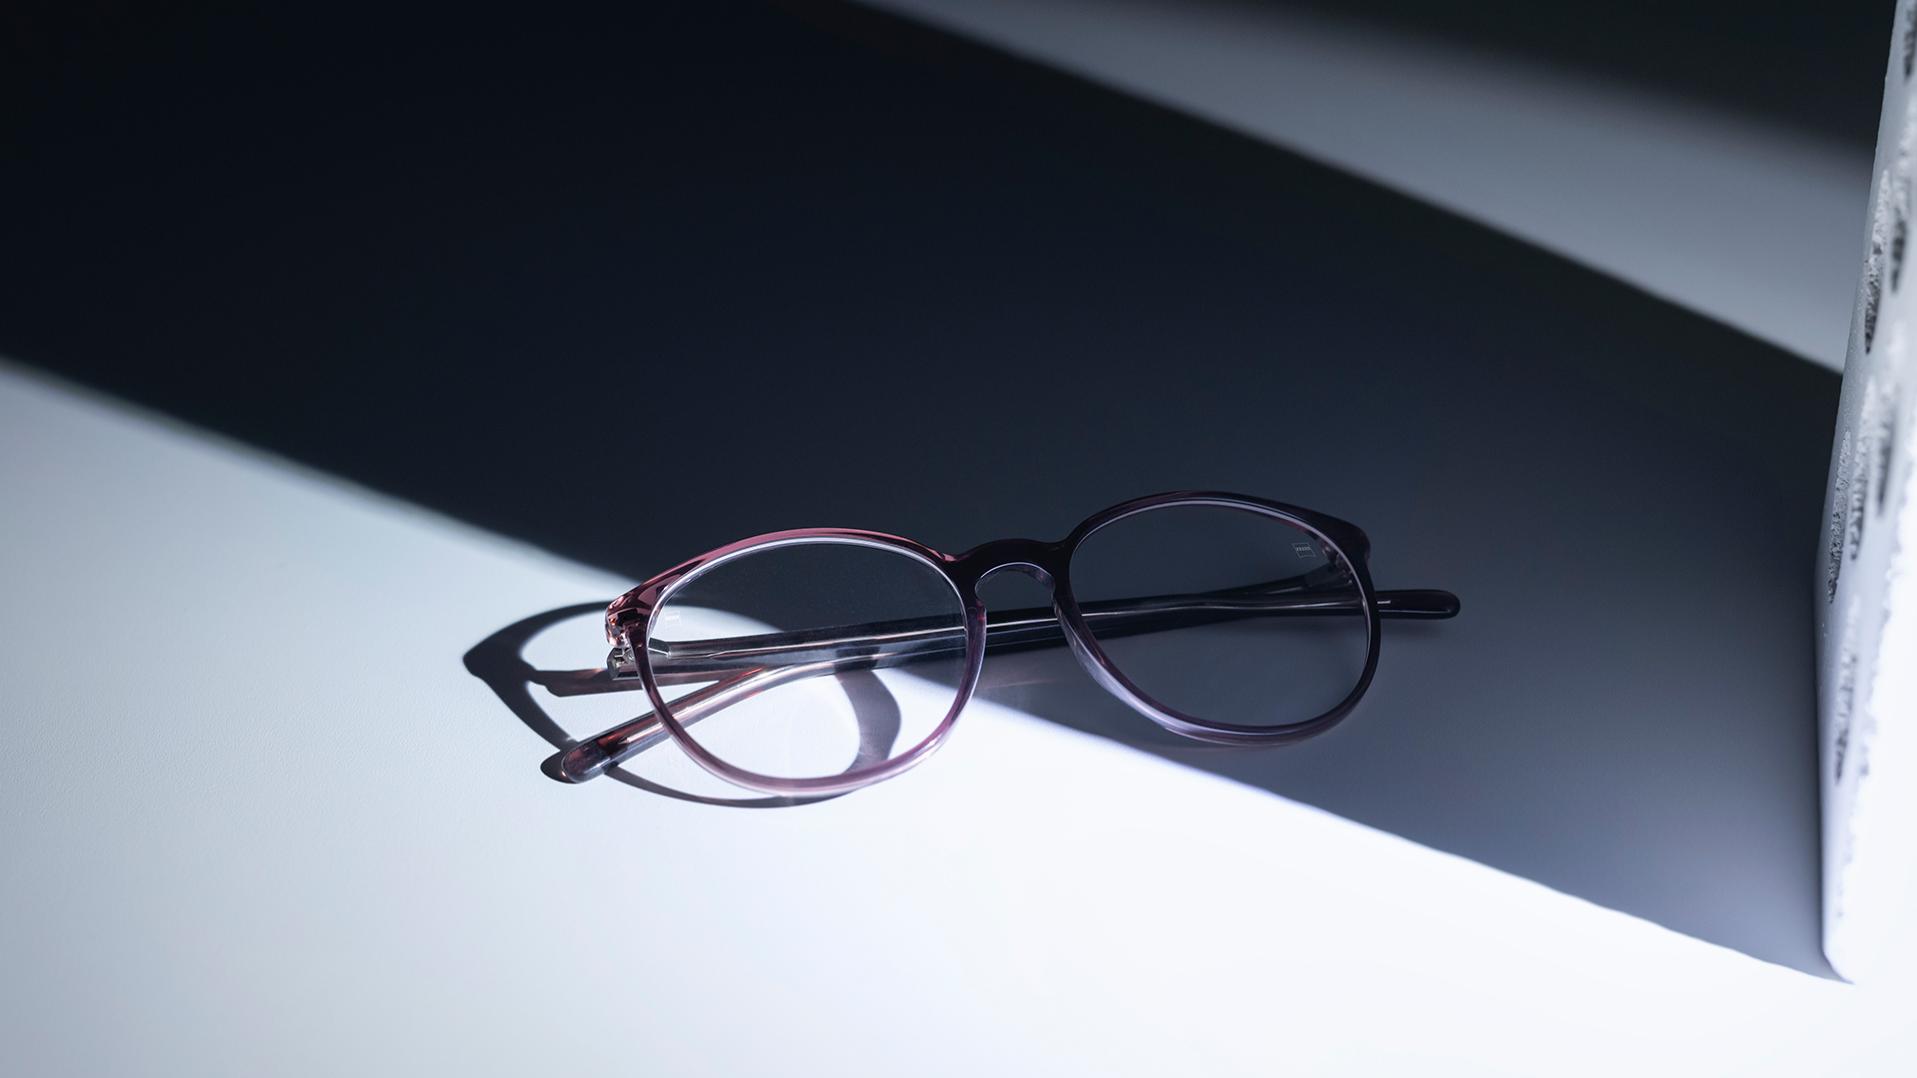 Brillen mit ZEISS Brillengläsern und DuraVision® Beschichtungen, die sich zur Hälfte im Schatten und zur Hälfte in der Sonne befinden.